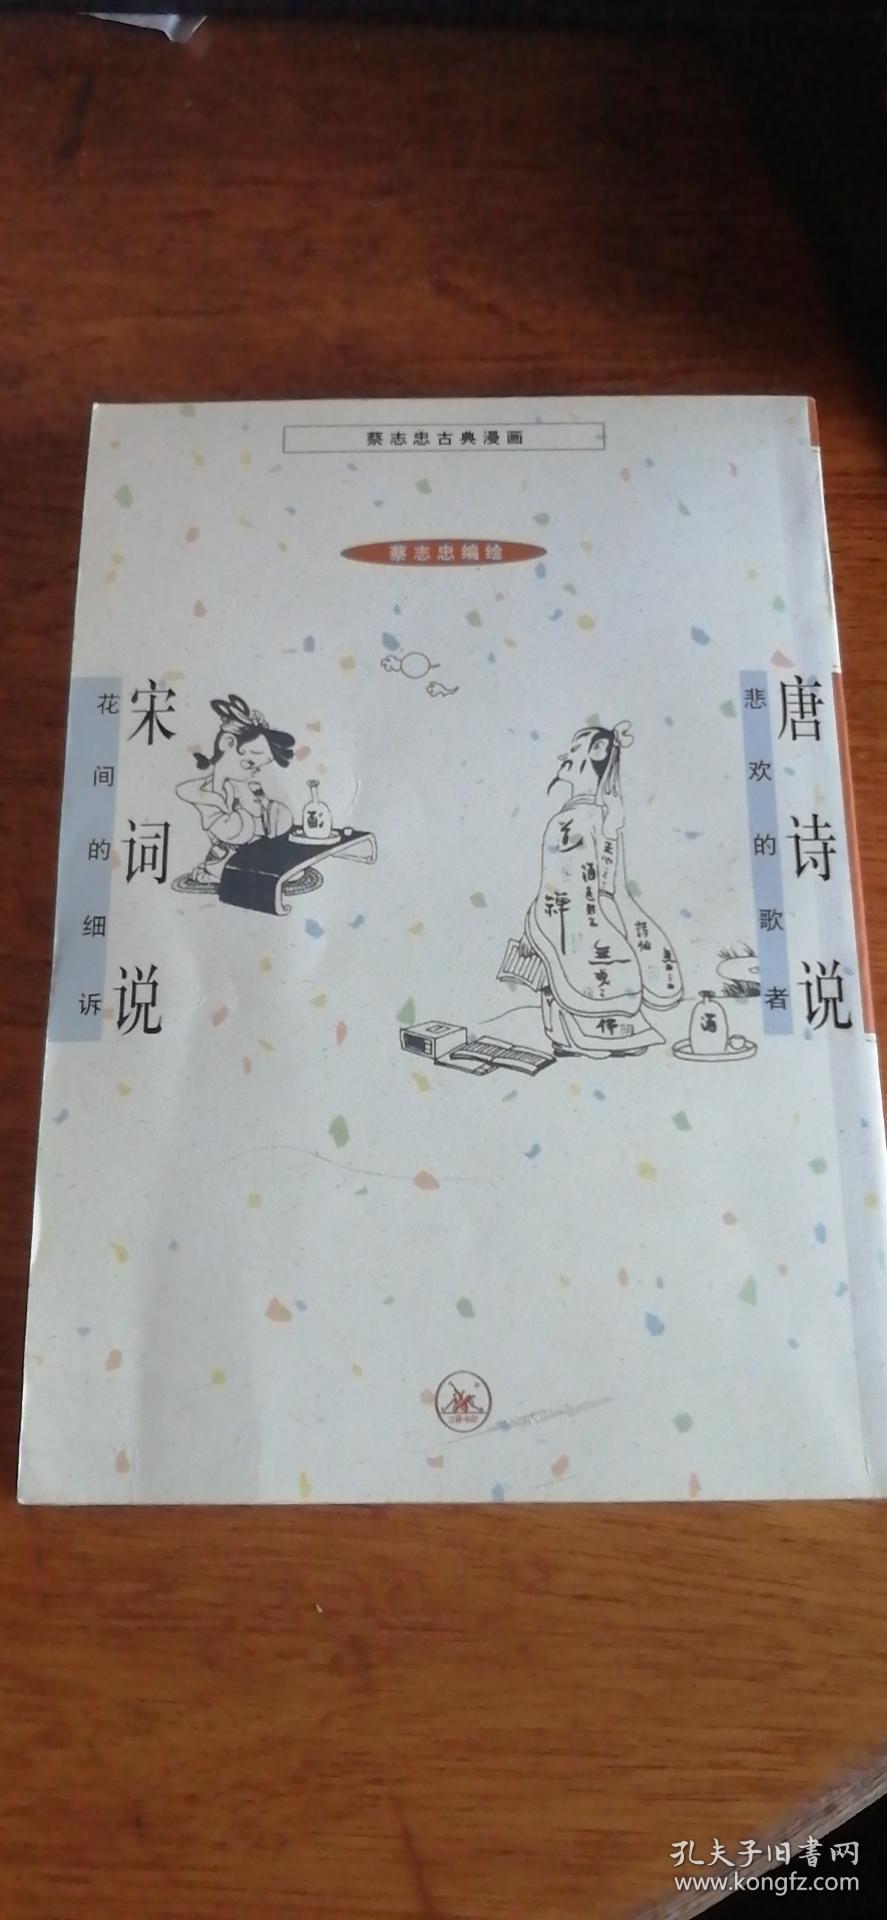 蔡志忠古典漫画：唐诗说--悲欢的歌者+宋词说--花间的细述 2001年1版2印私藏品佳无字无章